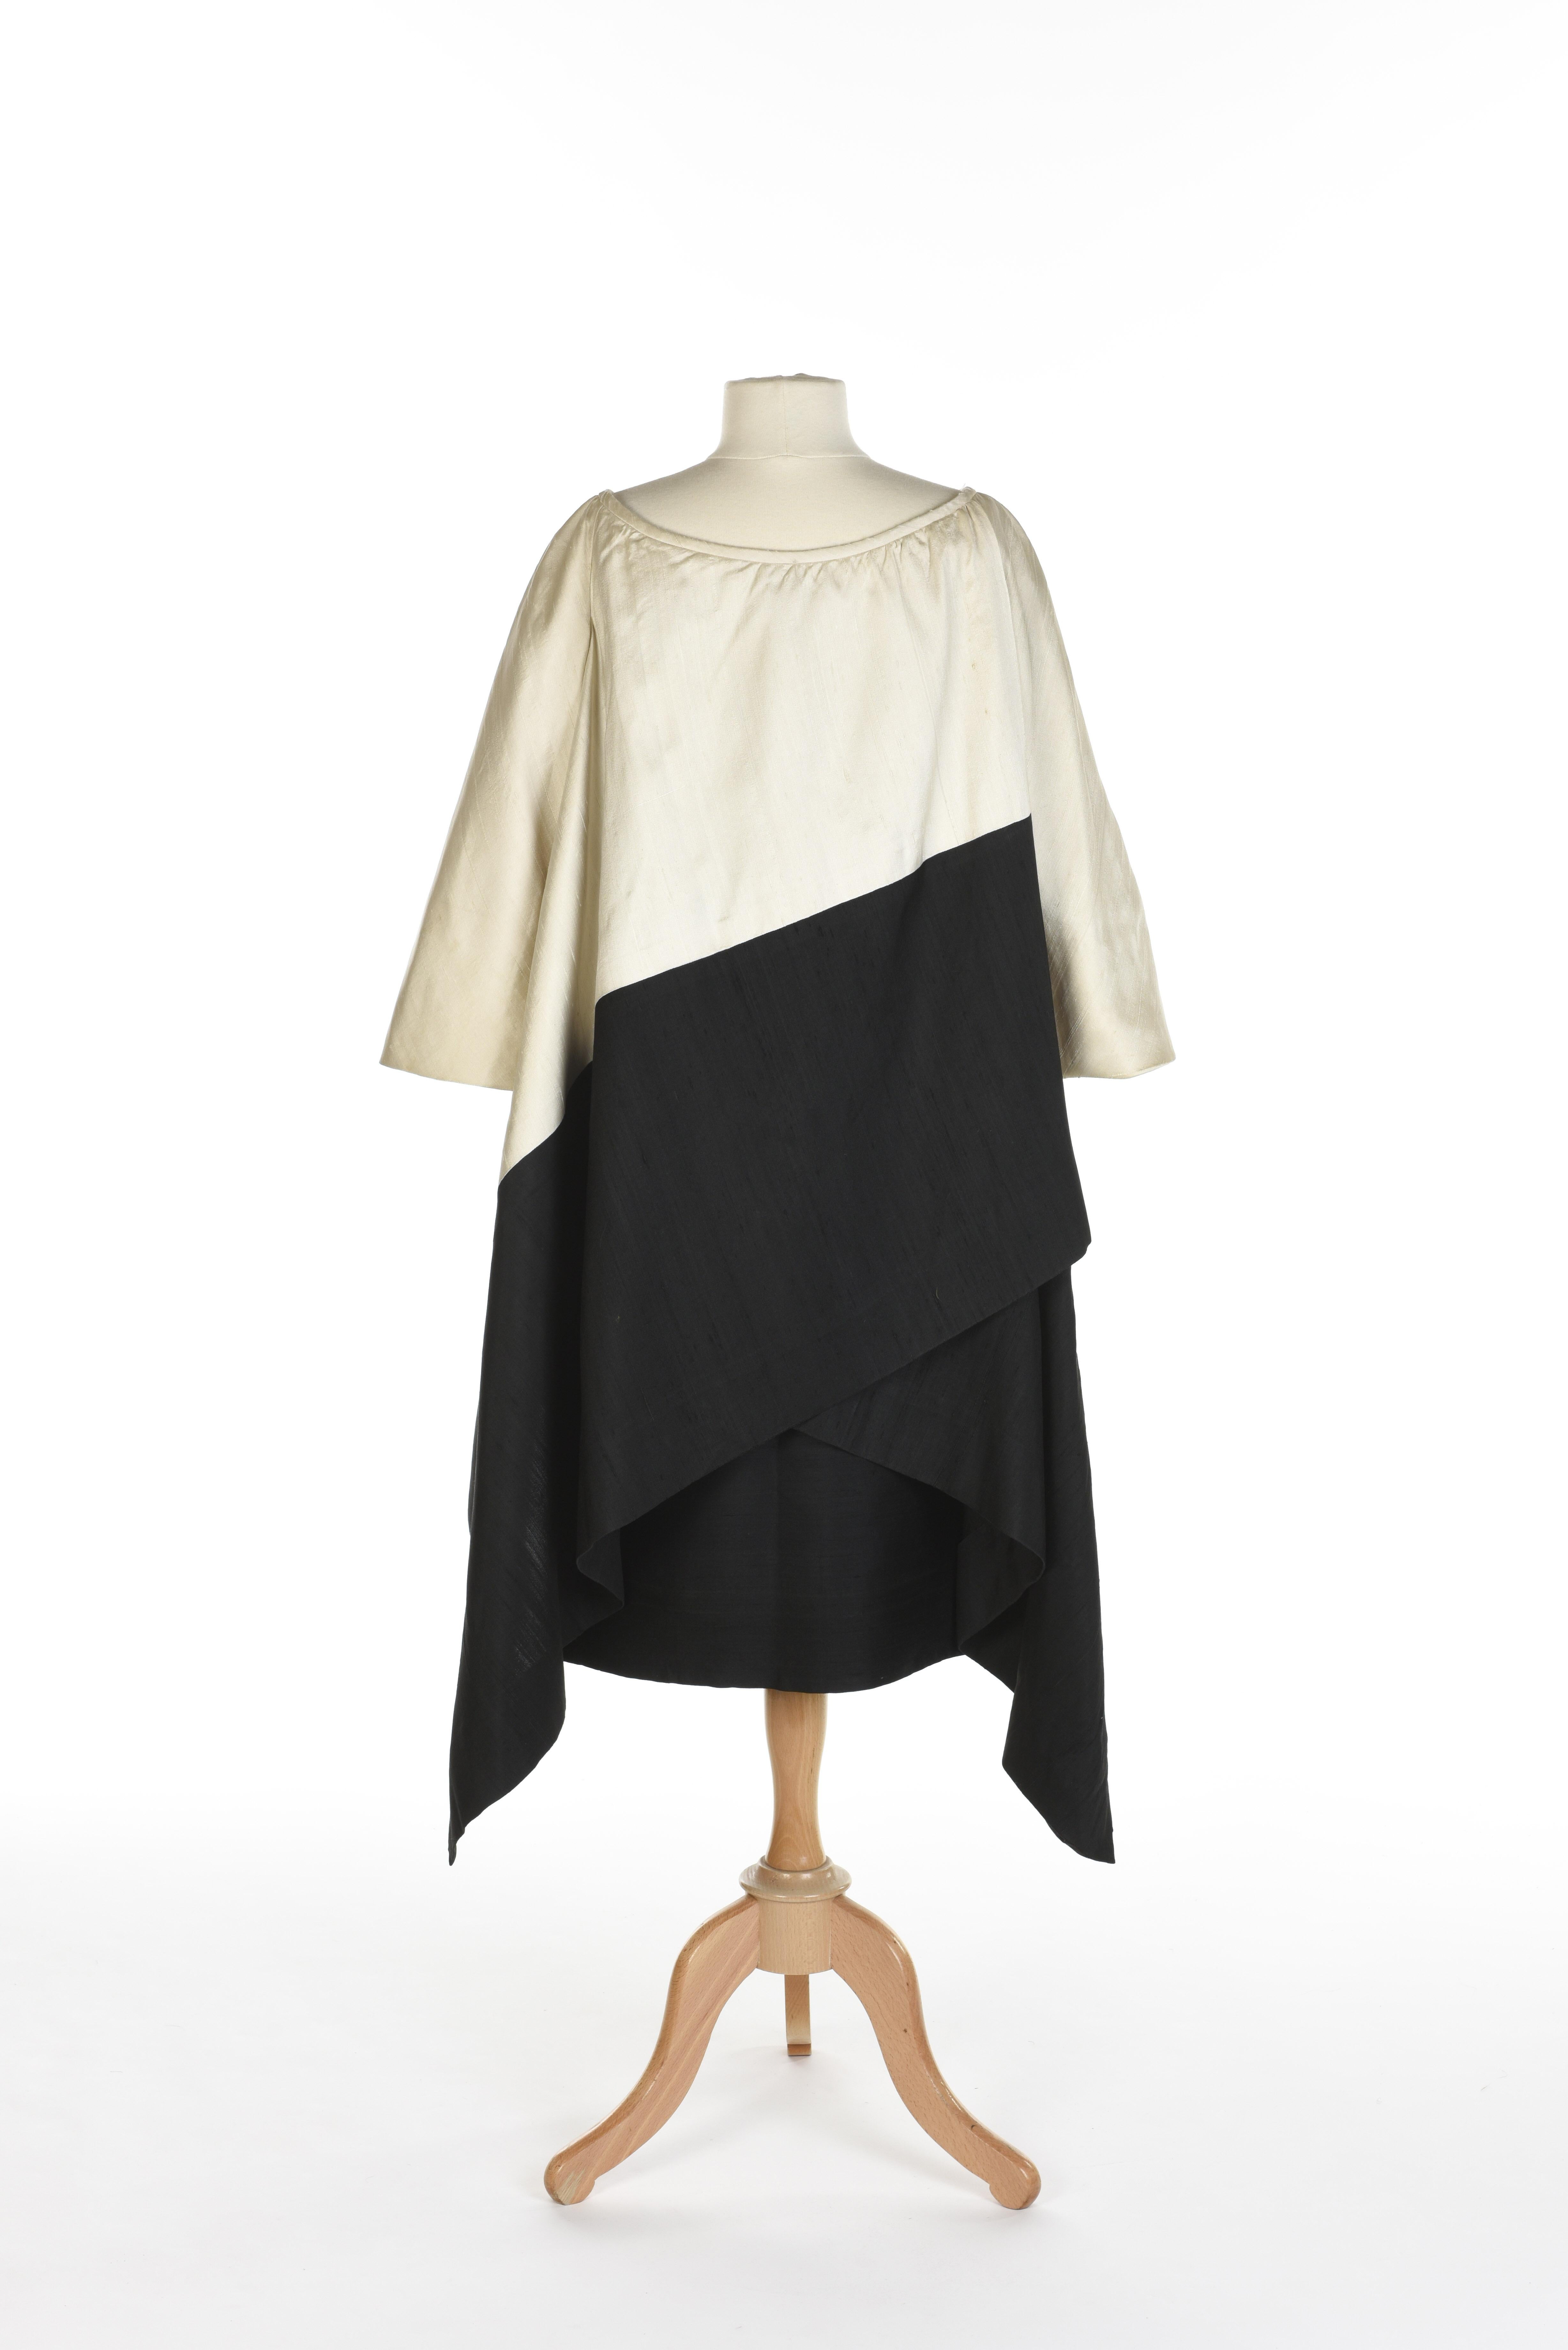 Ensemble de soirée Hubert de Givenchy Couture française en soie crème et noire Circa 1965 en vente 7